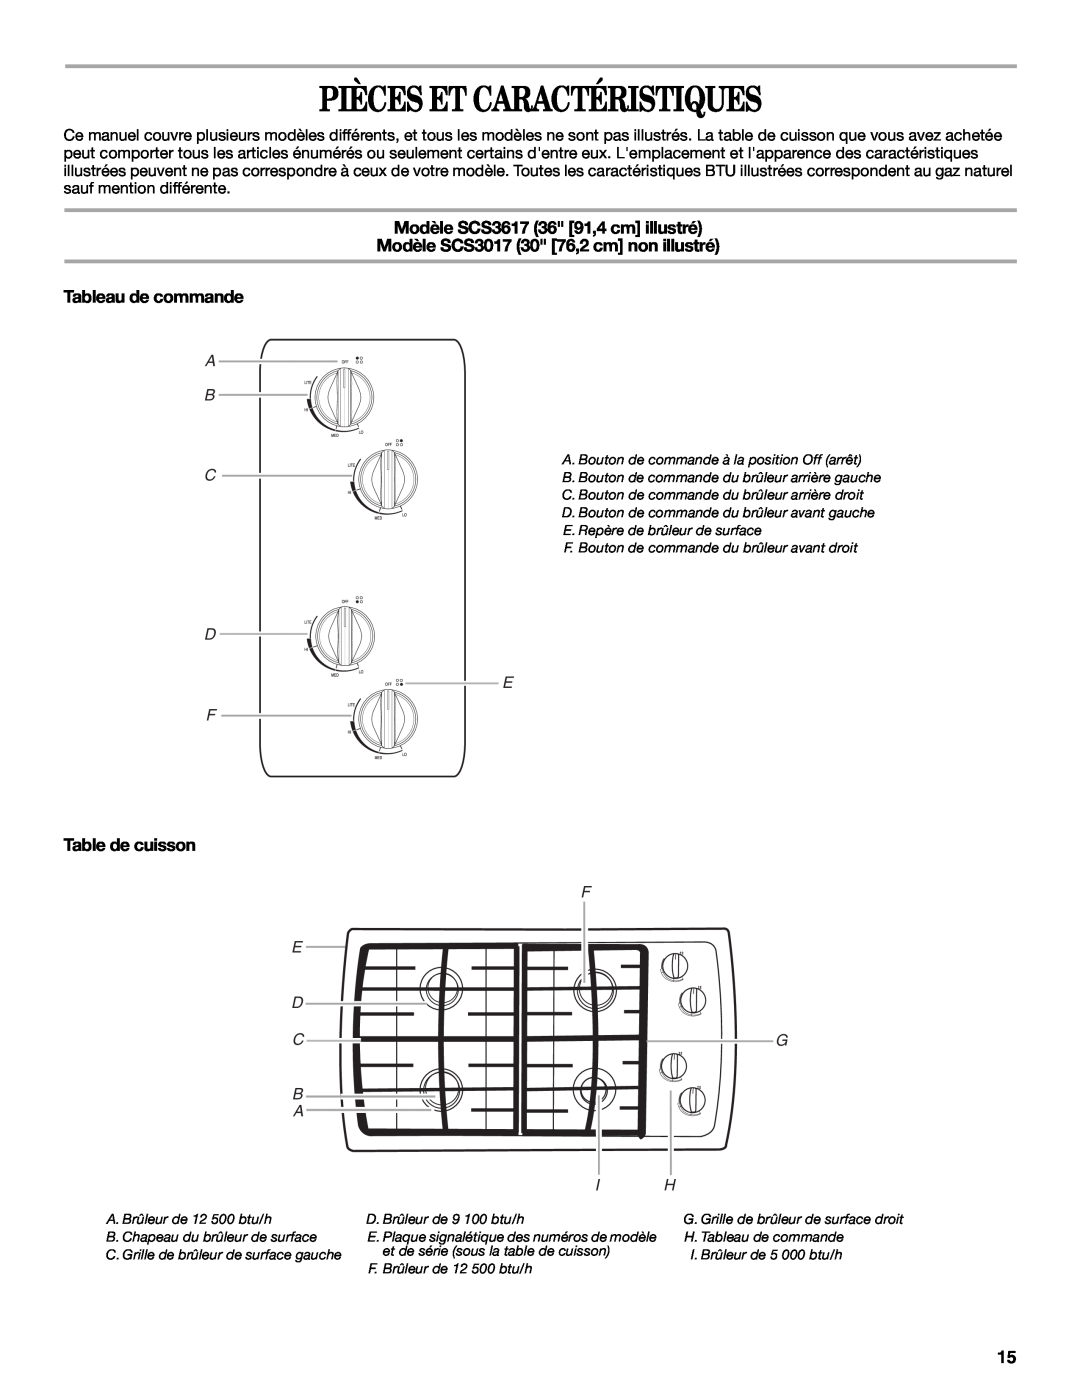 Whirlpool GLS3074 Pièces Et Caractéristiques, Modèle SCS3617 36 91,4 cm illustré, Table de cuisson, A B C D F, E D C B A 